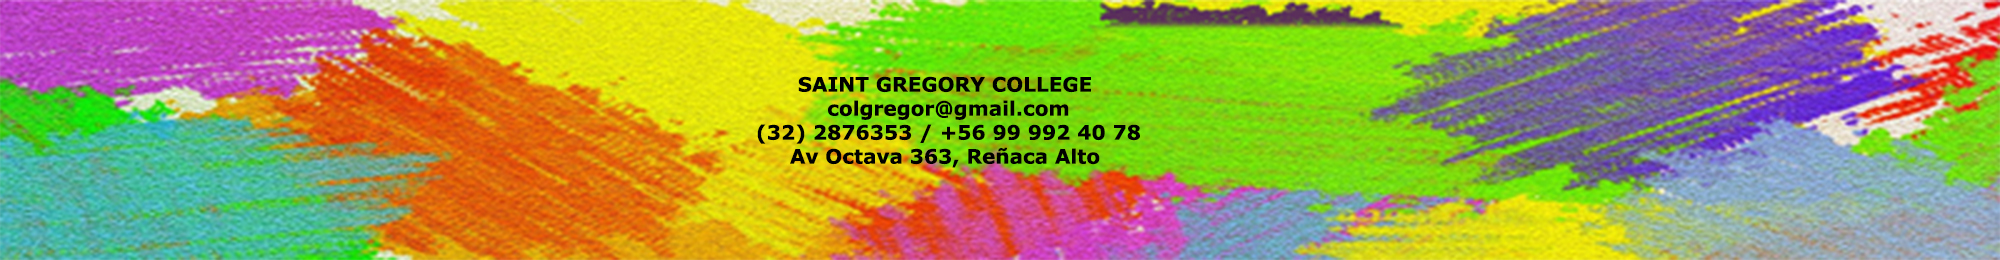 Informacin Saint Gregory College